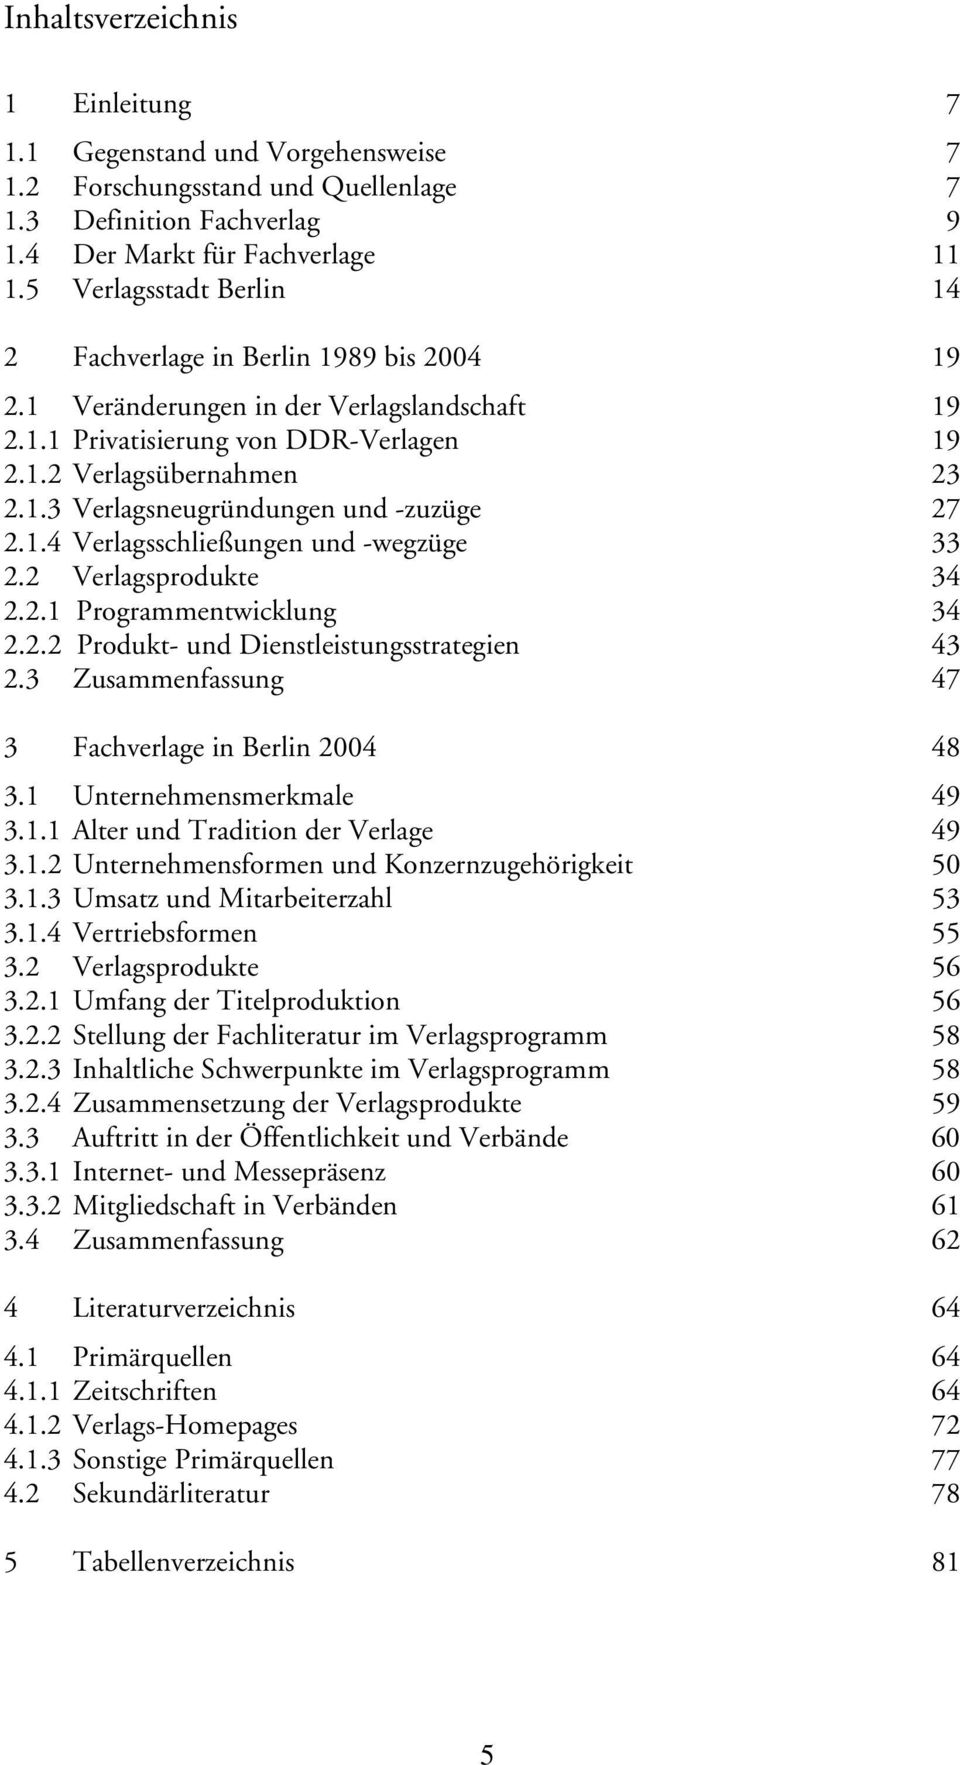 1.4 Verlagsschließungen und -wegzüge 33 2.2 Verlagsprodukte 34 2.2.1 Programmentwicklung 34 2.2.2 Produkt- und Dienstleistungsstrategien 43 2.3 Zusammenfassung 47 3 Fachverlage in Berlin 2004 48 3.